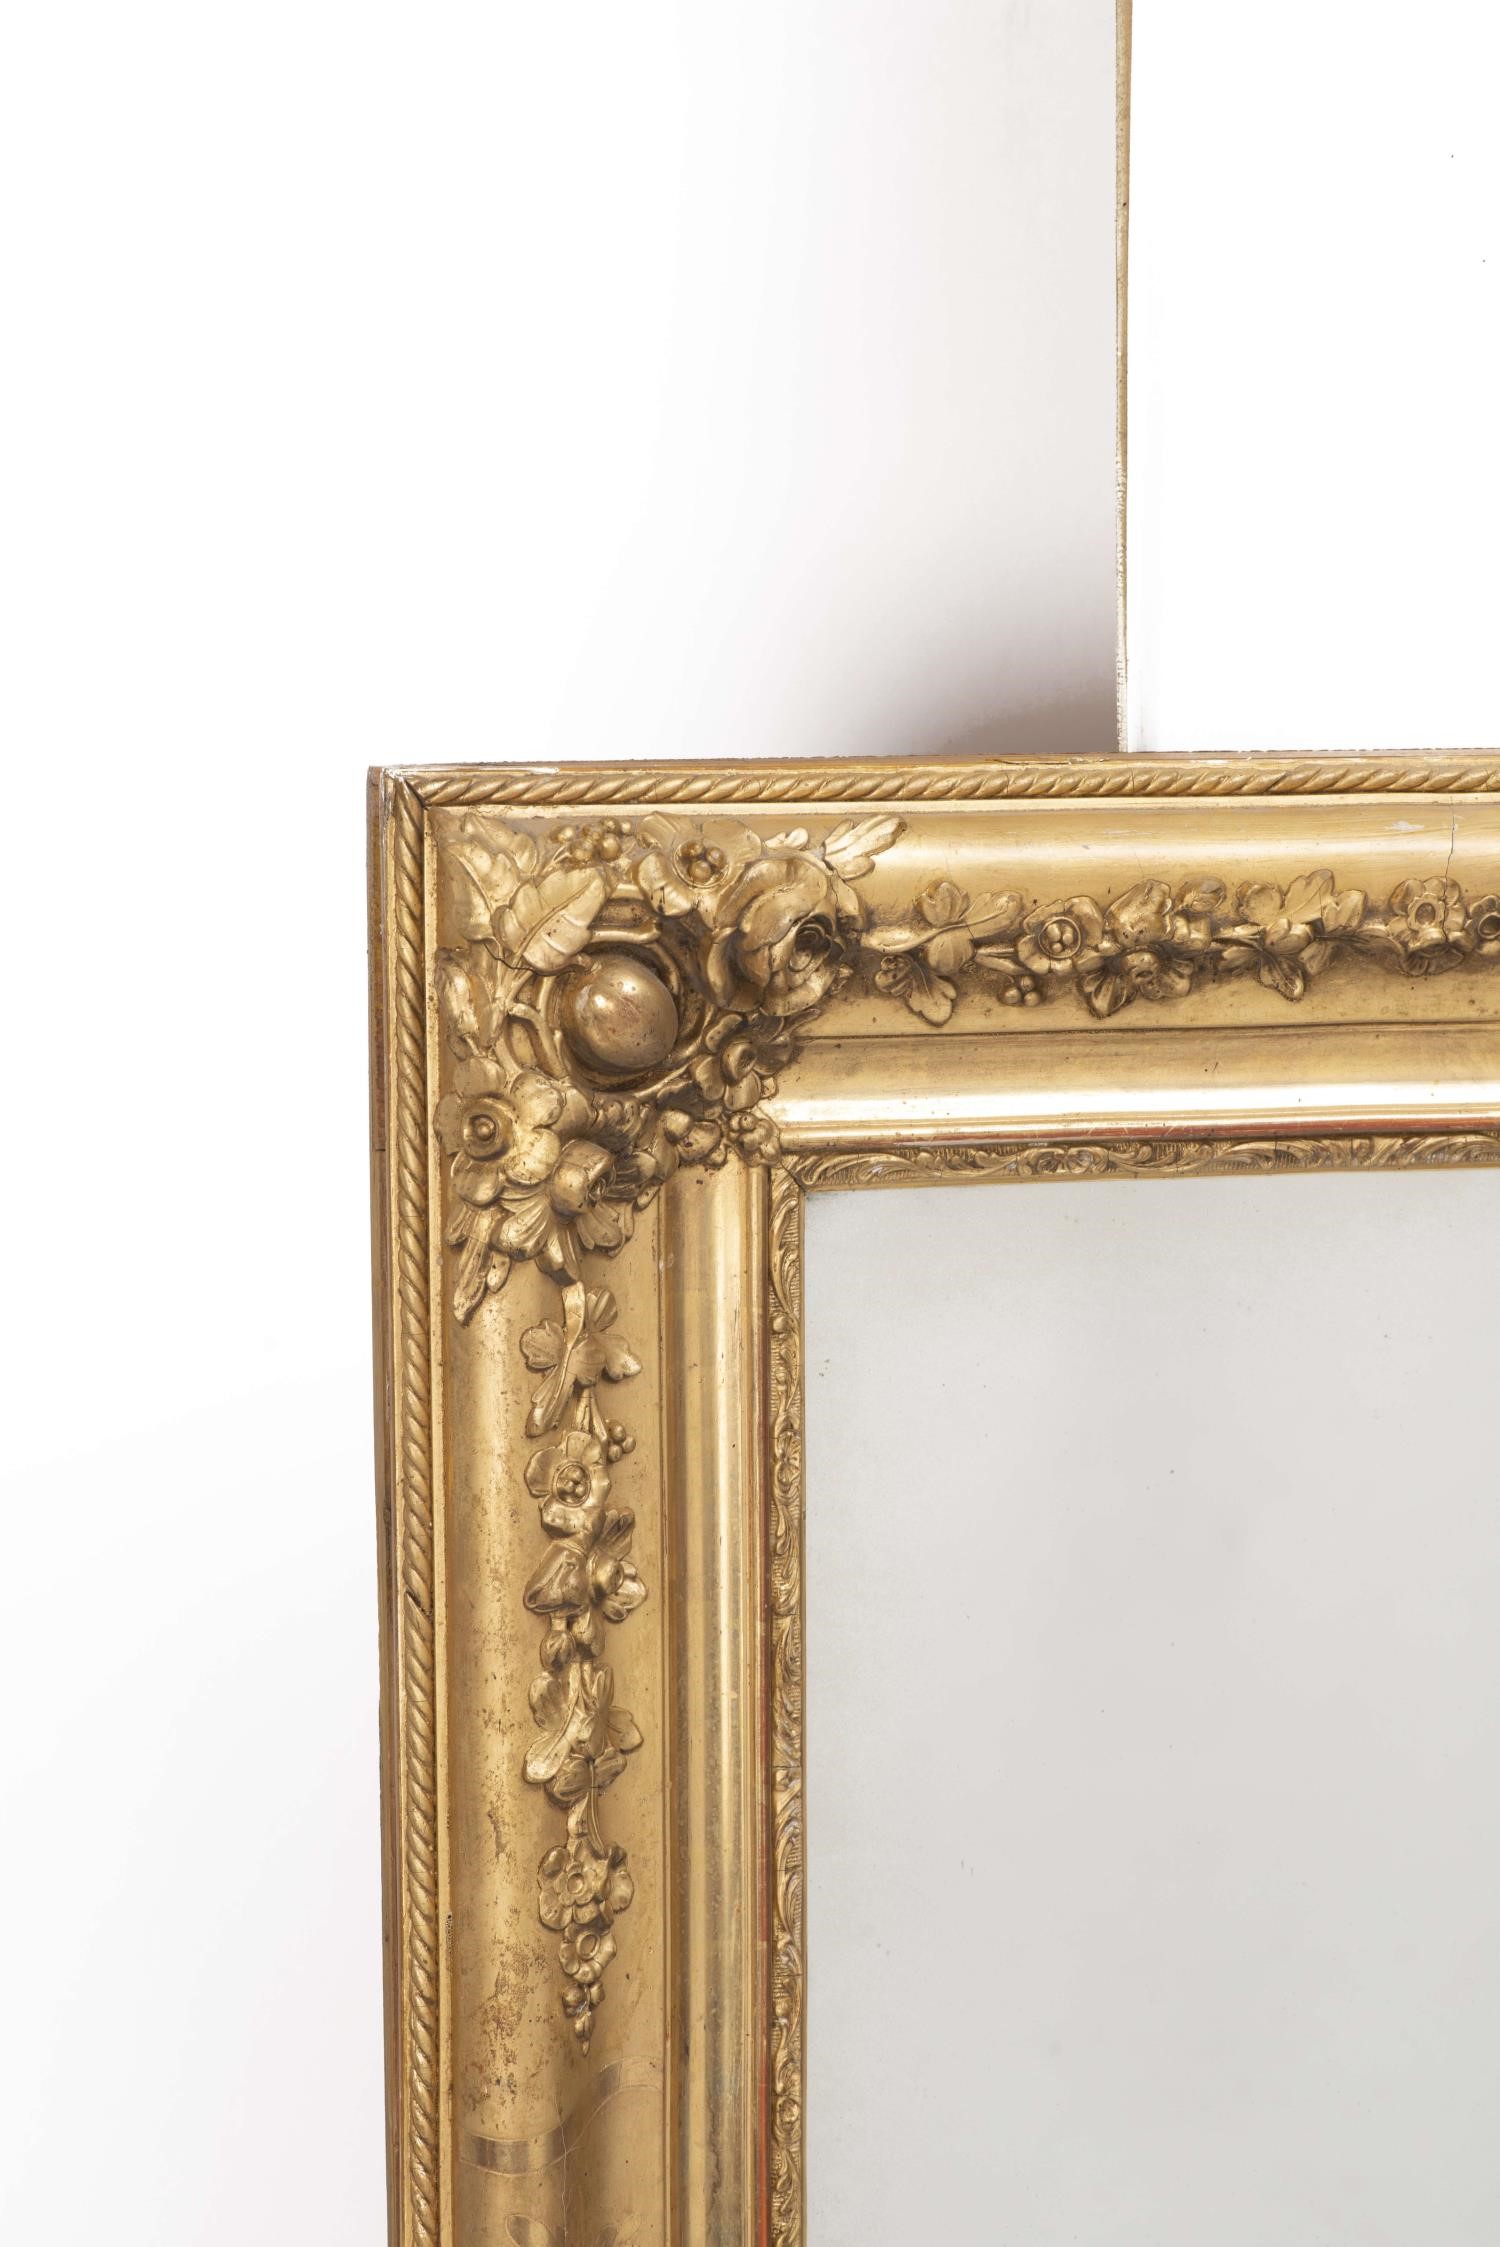 Miroir rectangulaire décoré de guirlandes et de fleurs en stuc doré 137x97 cm - - [...] - Image 2 of 4